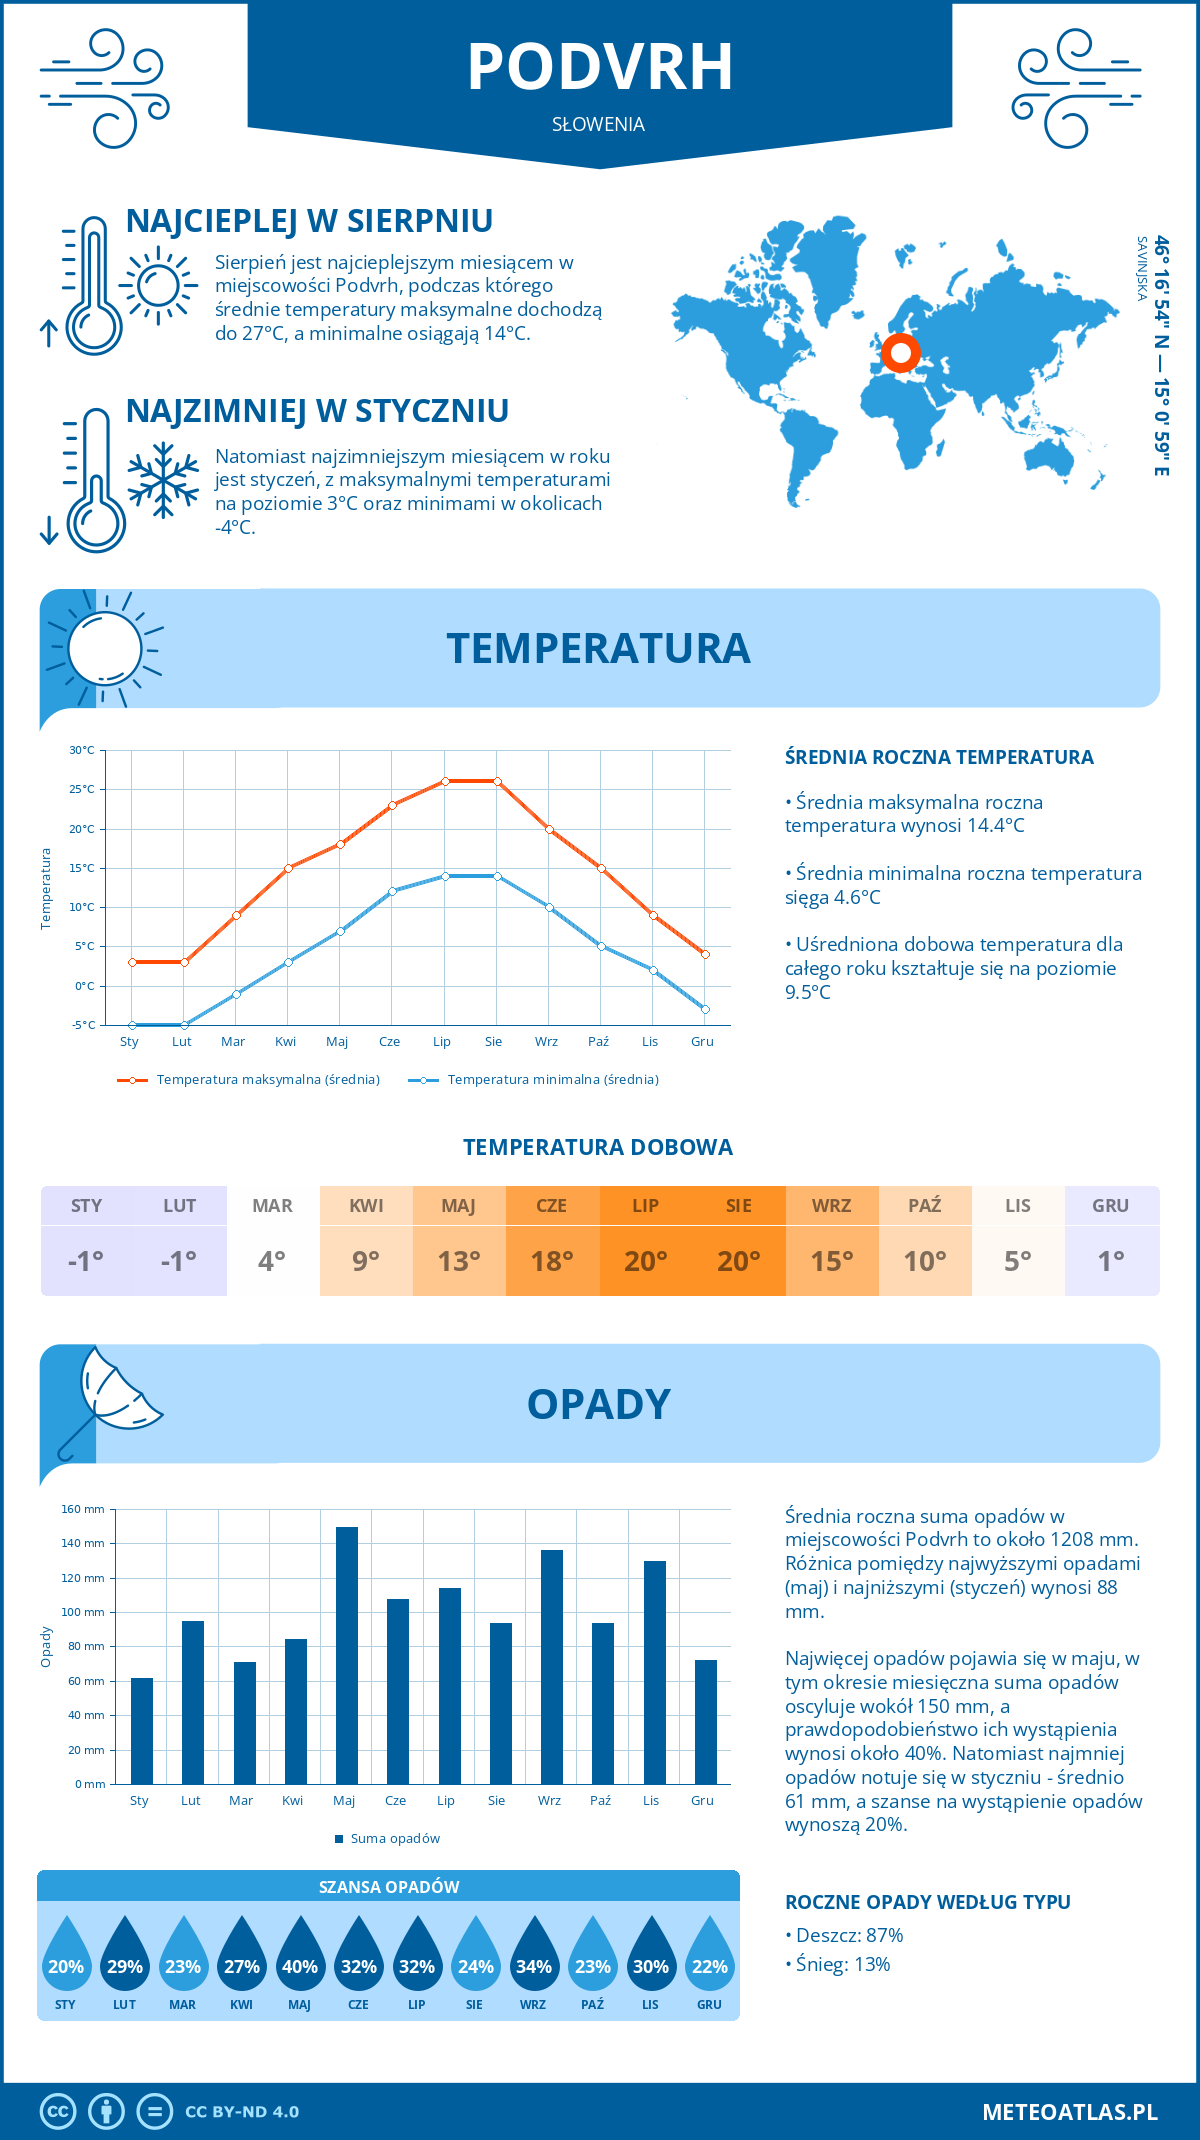 Pogoda Podvrh (Słowenia). Temperatura oraz opady.